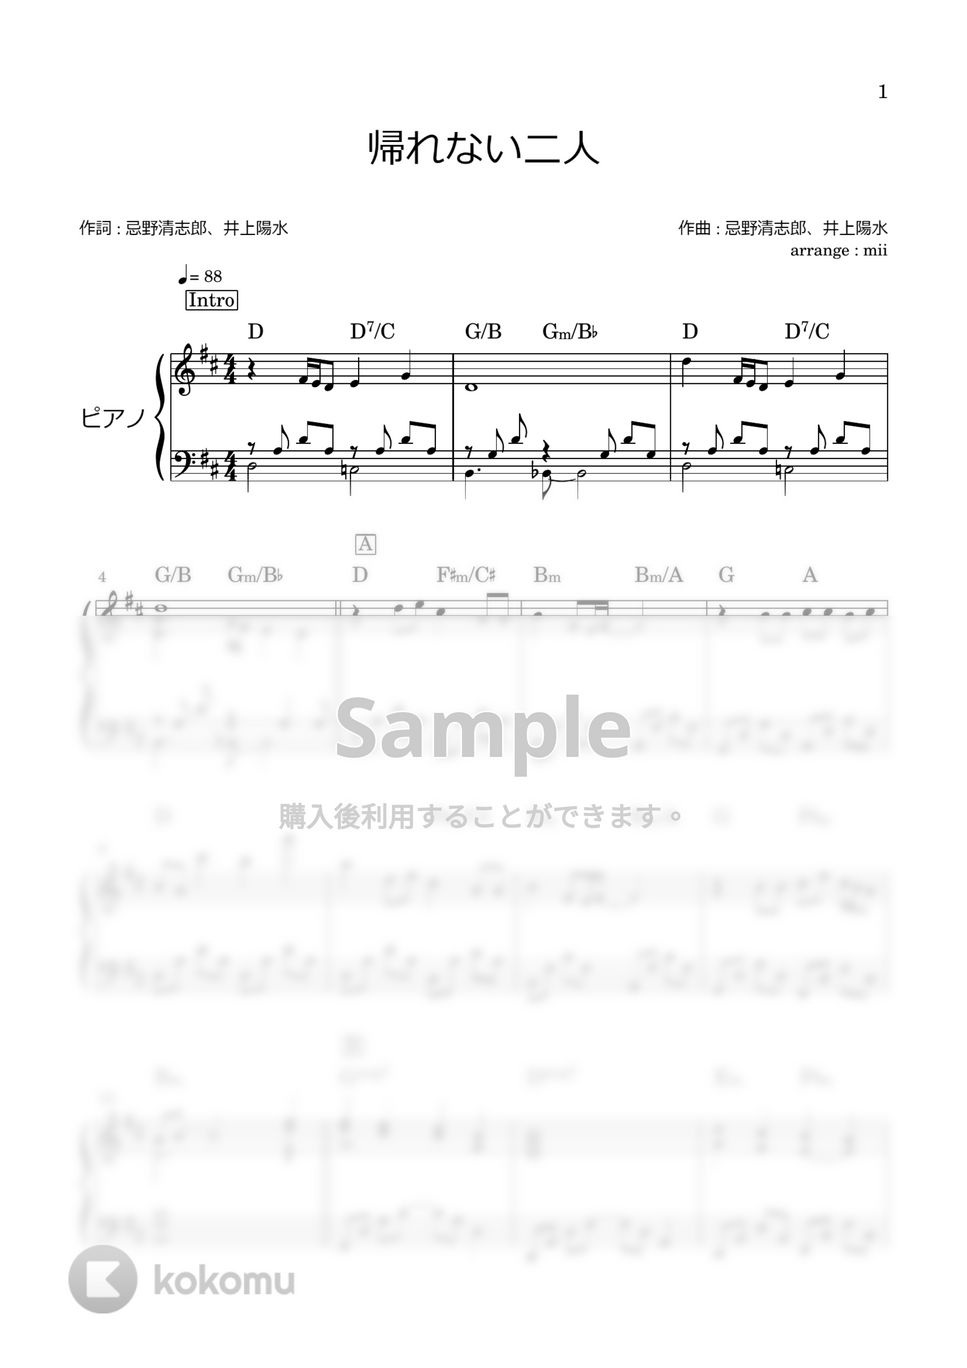 井上陽水 - 帰れない二人 by miiの楽譜棚